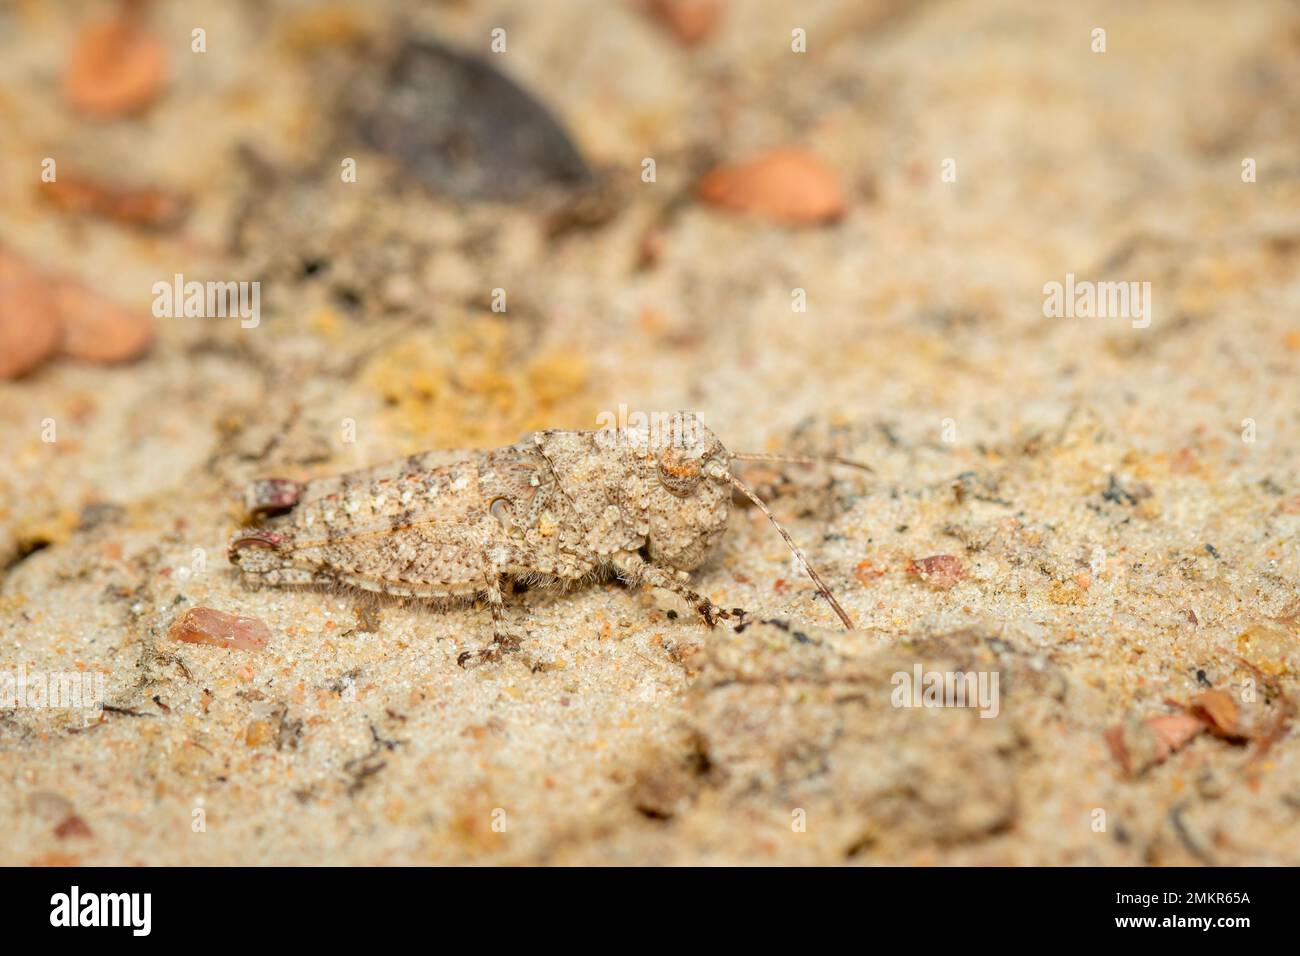 Immagine di un piccolo cricket marrone sul terreno. Insetto. Animale. Foto Stock